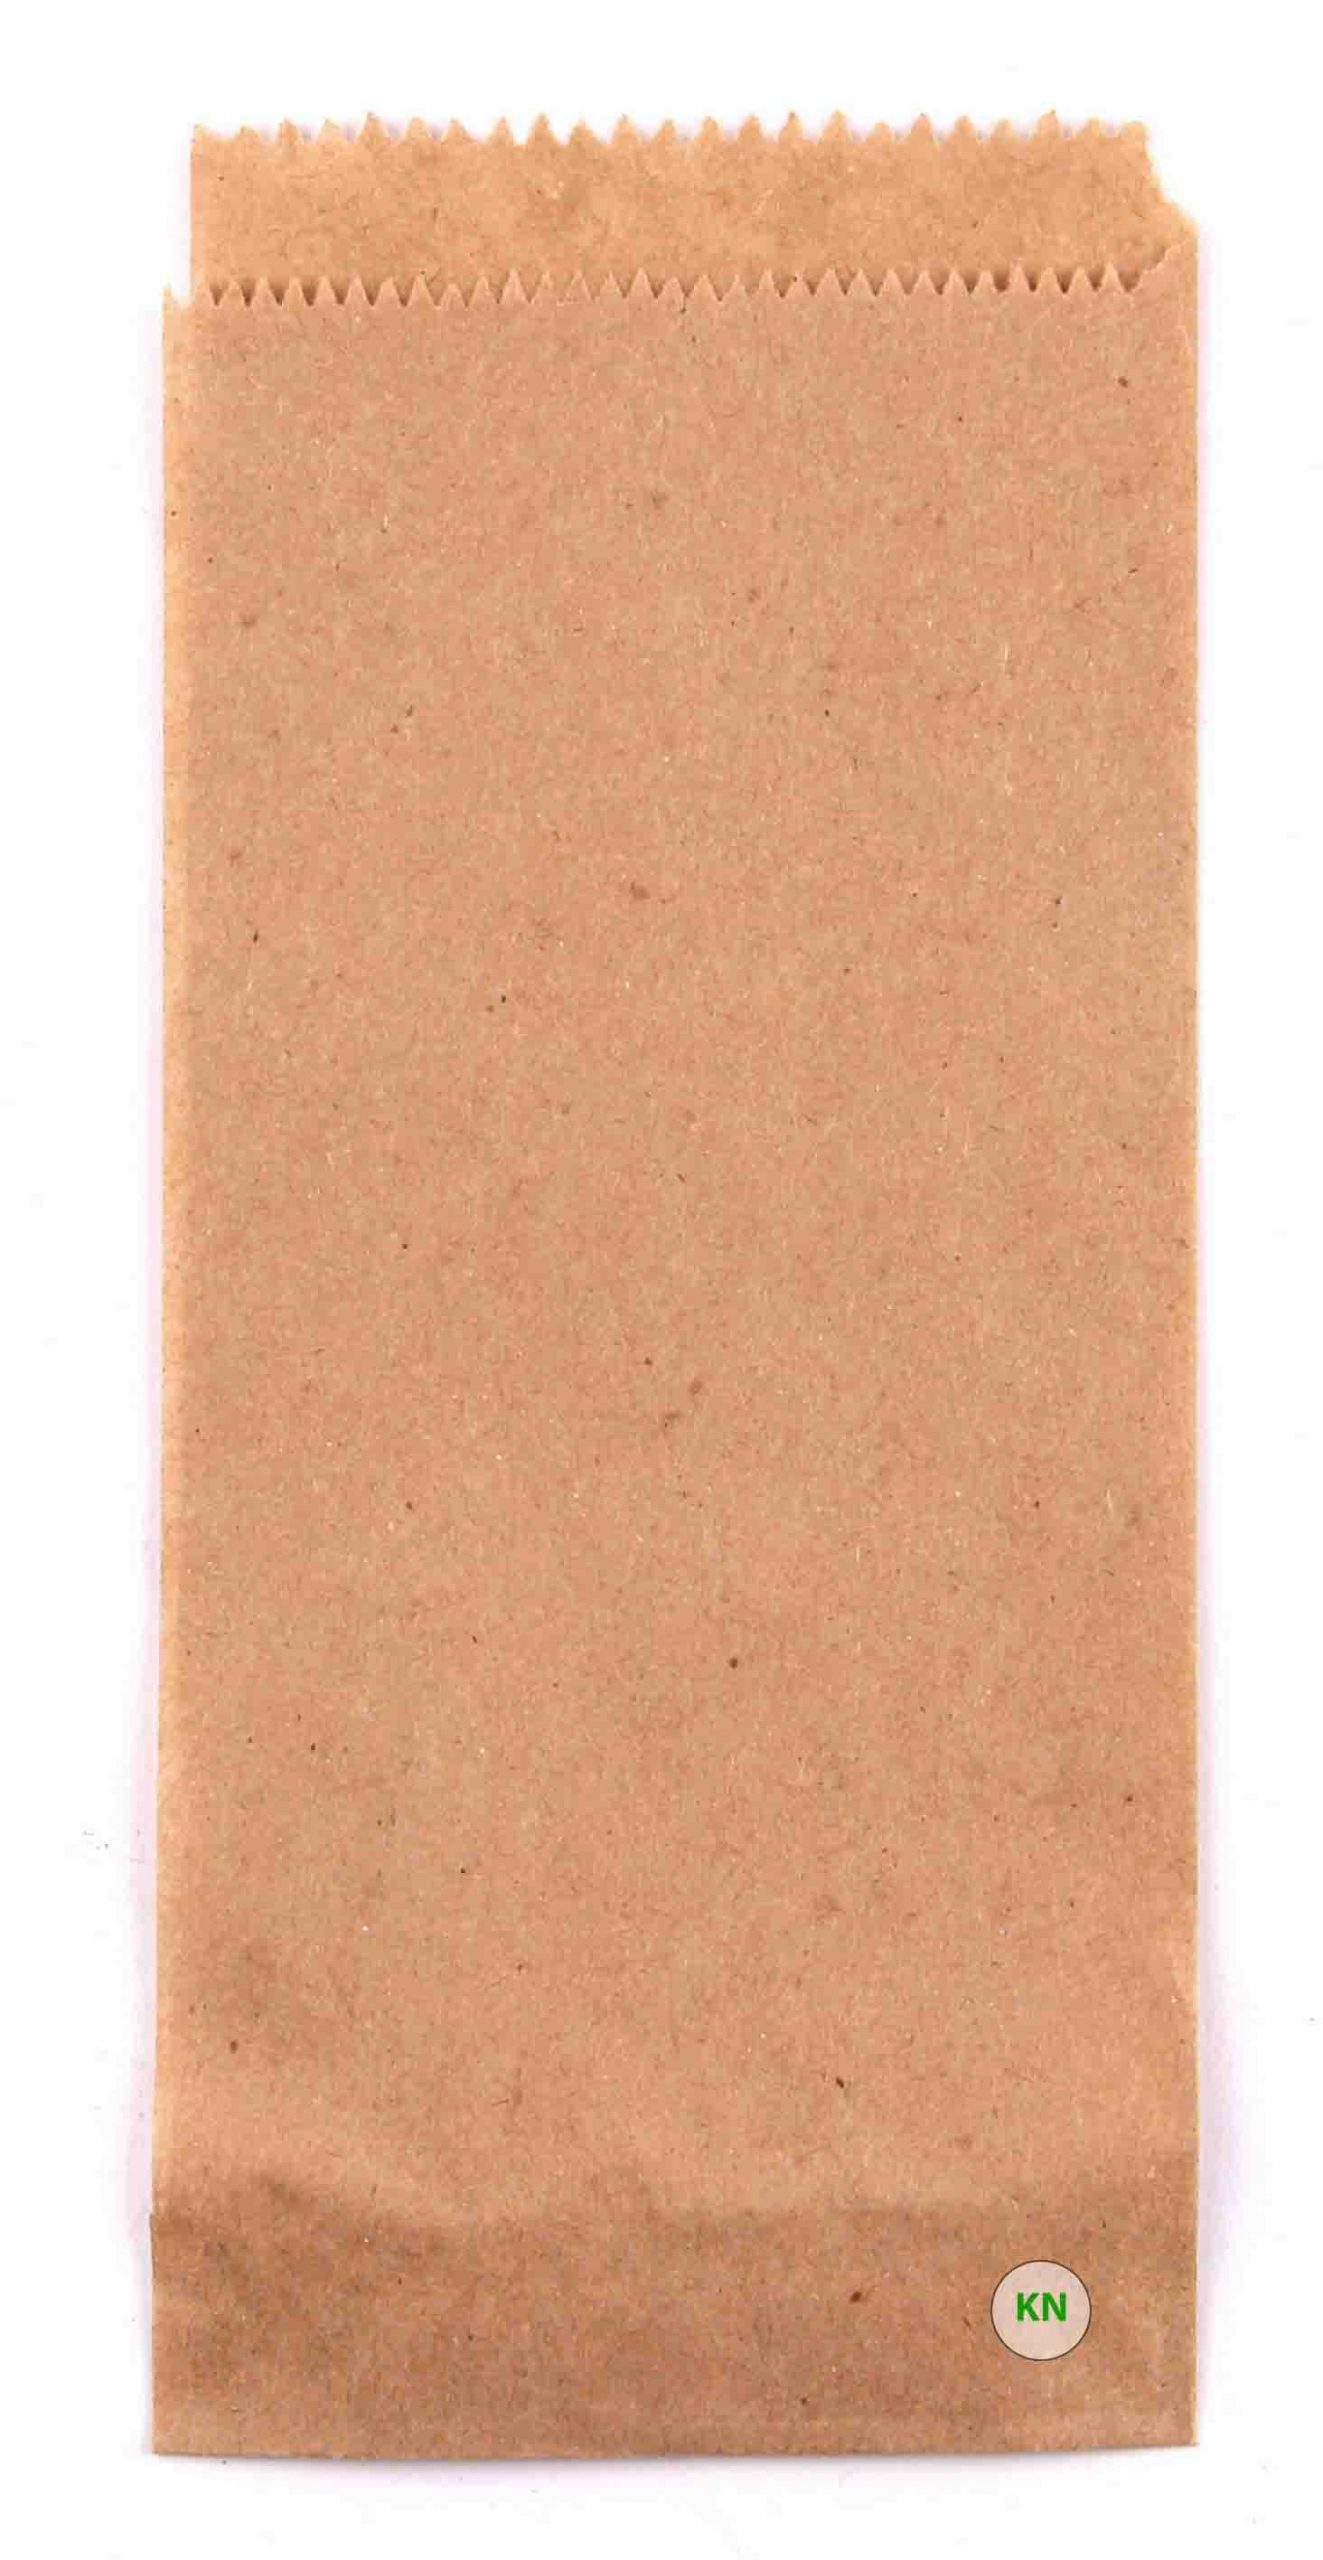 Пакет бумажный коричневый для шаурмы, 280 х 100 х 70 мм